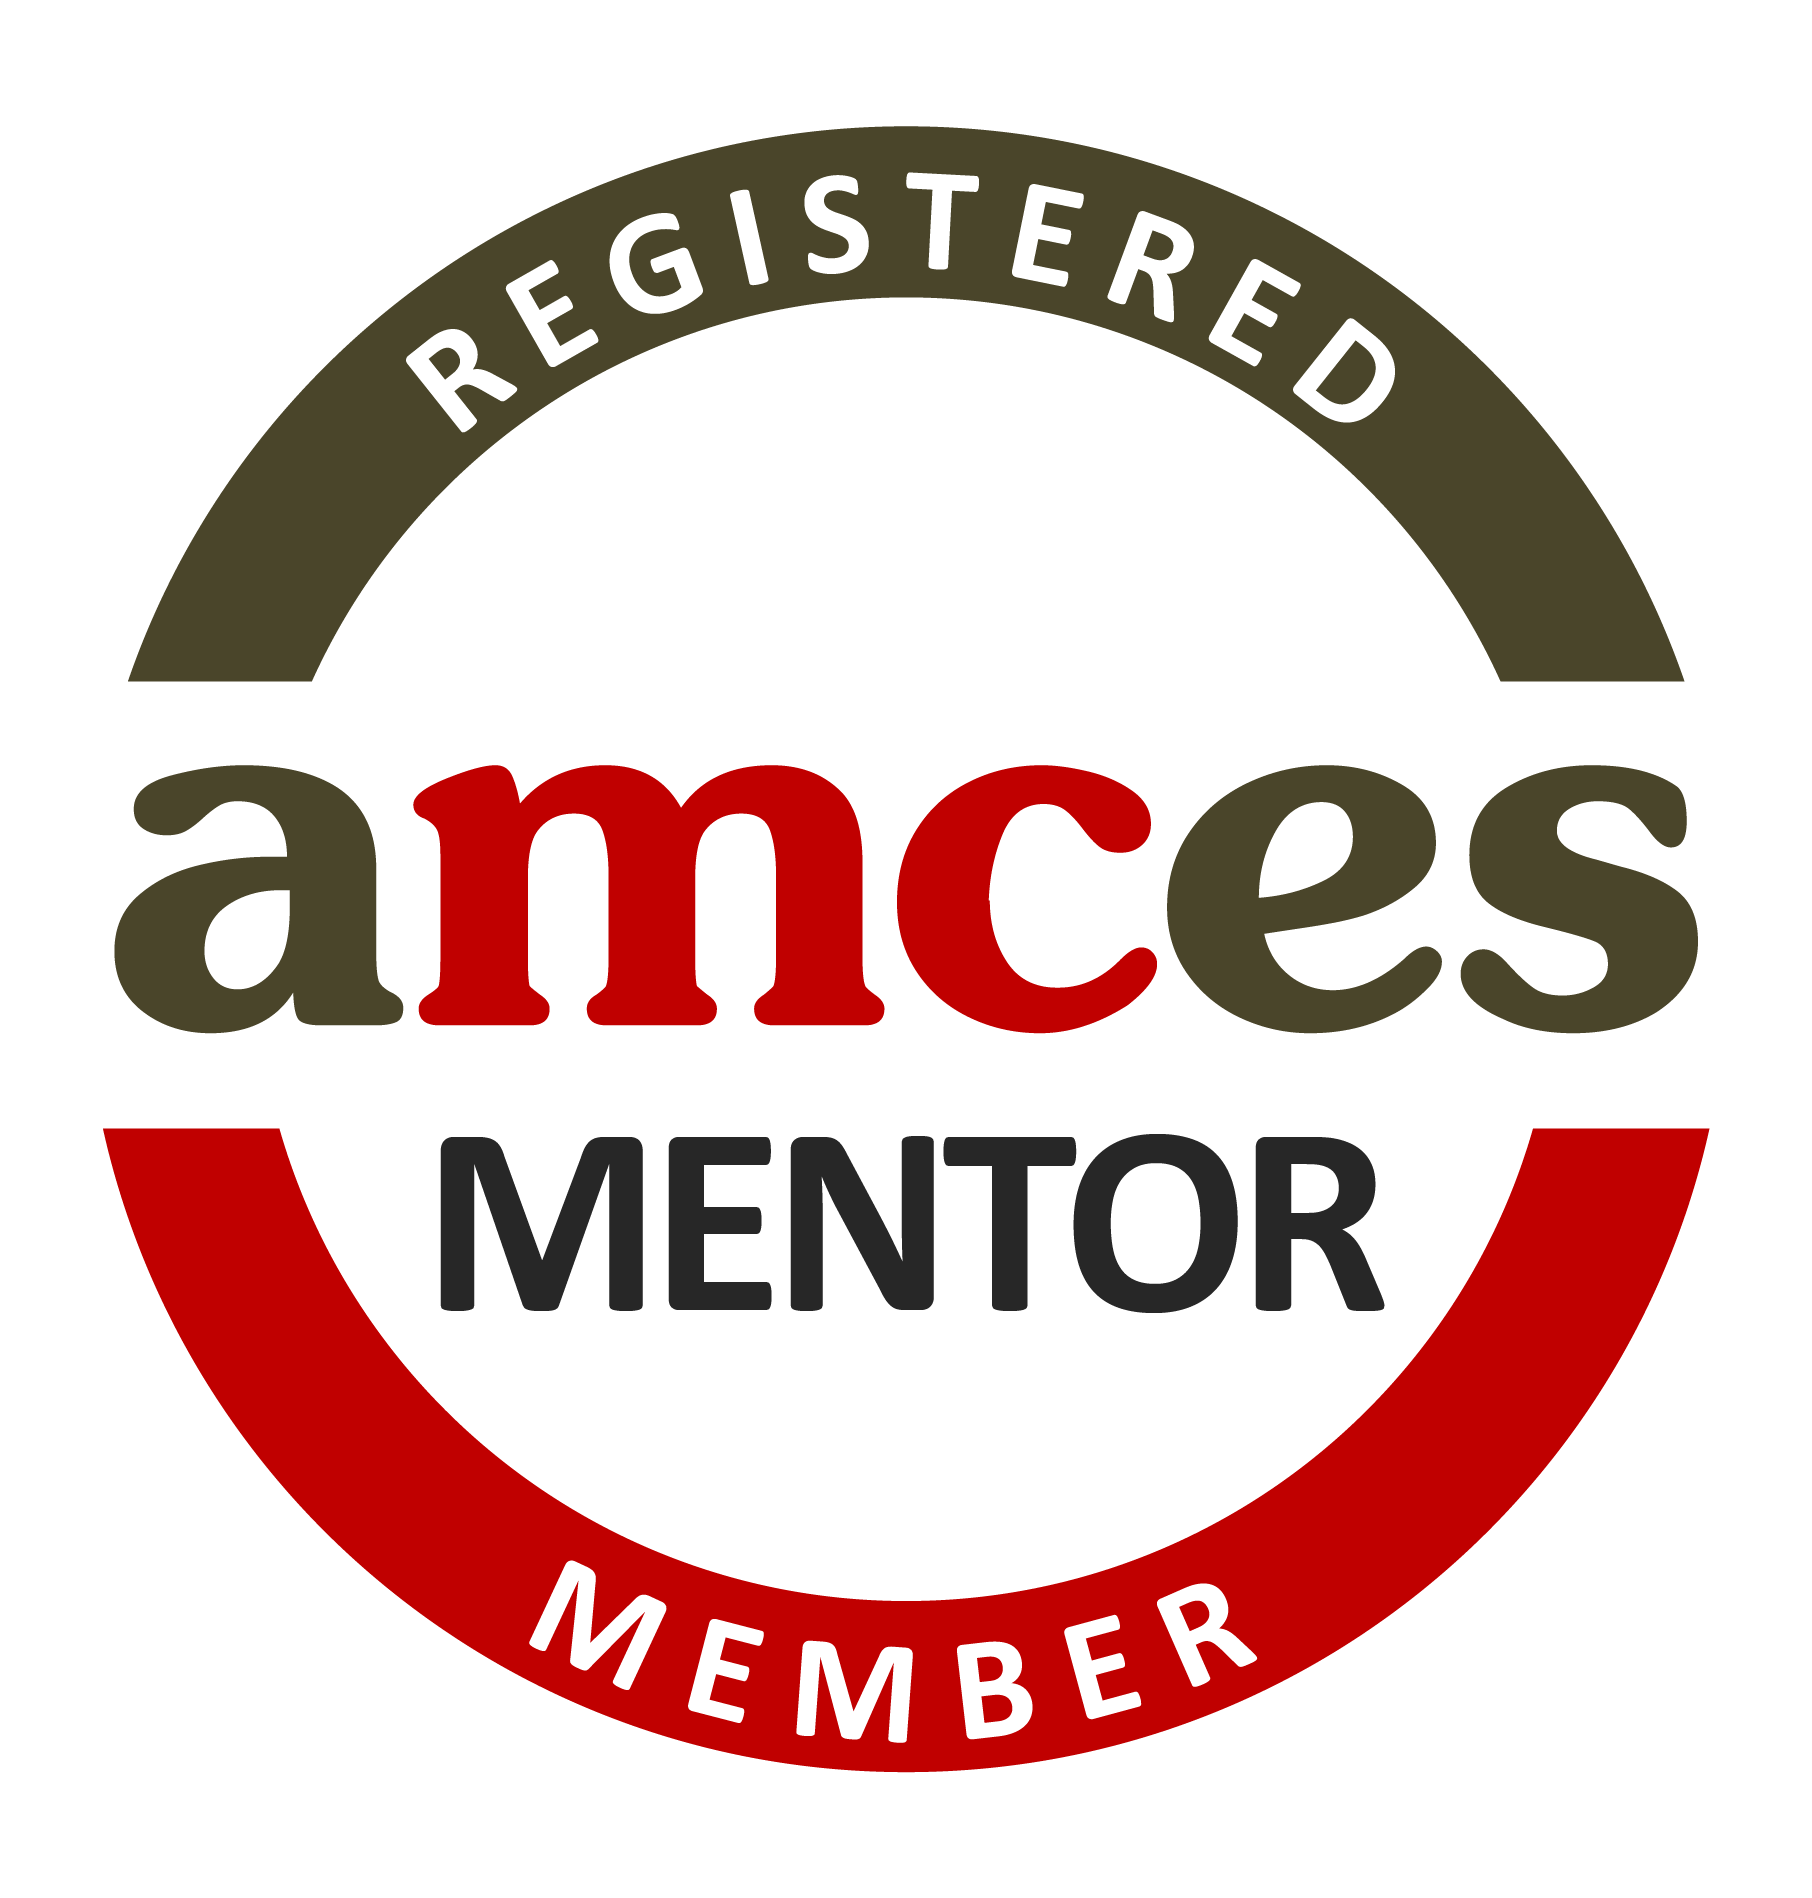 Acmes Mentor Registered